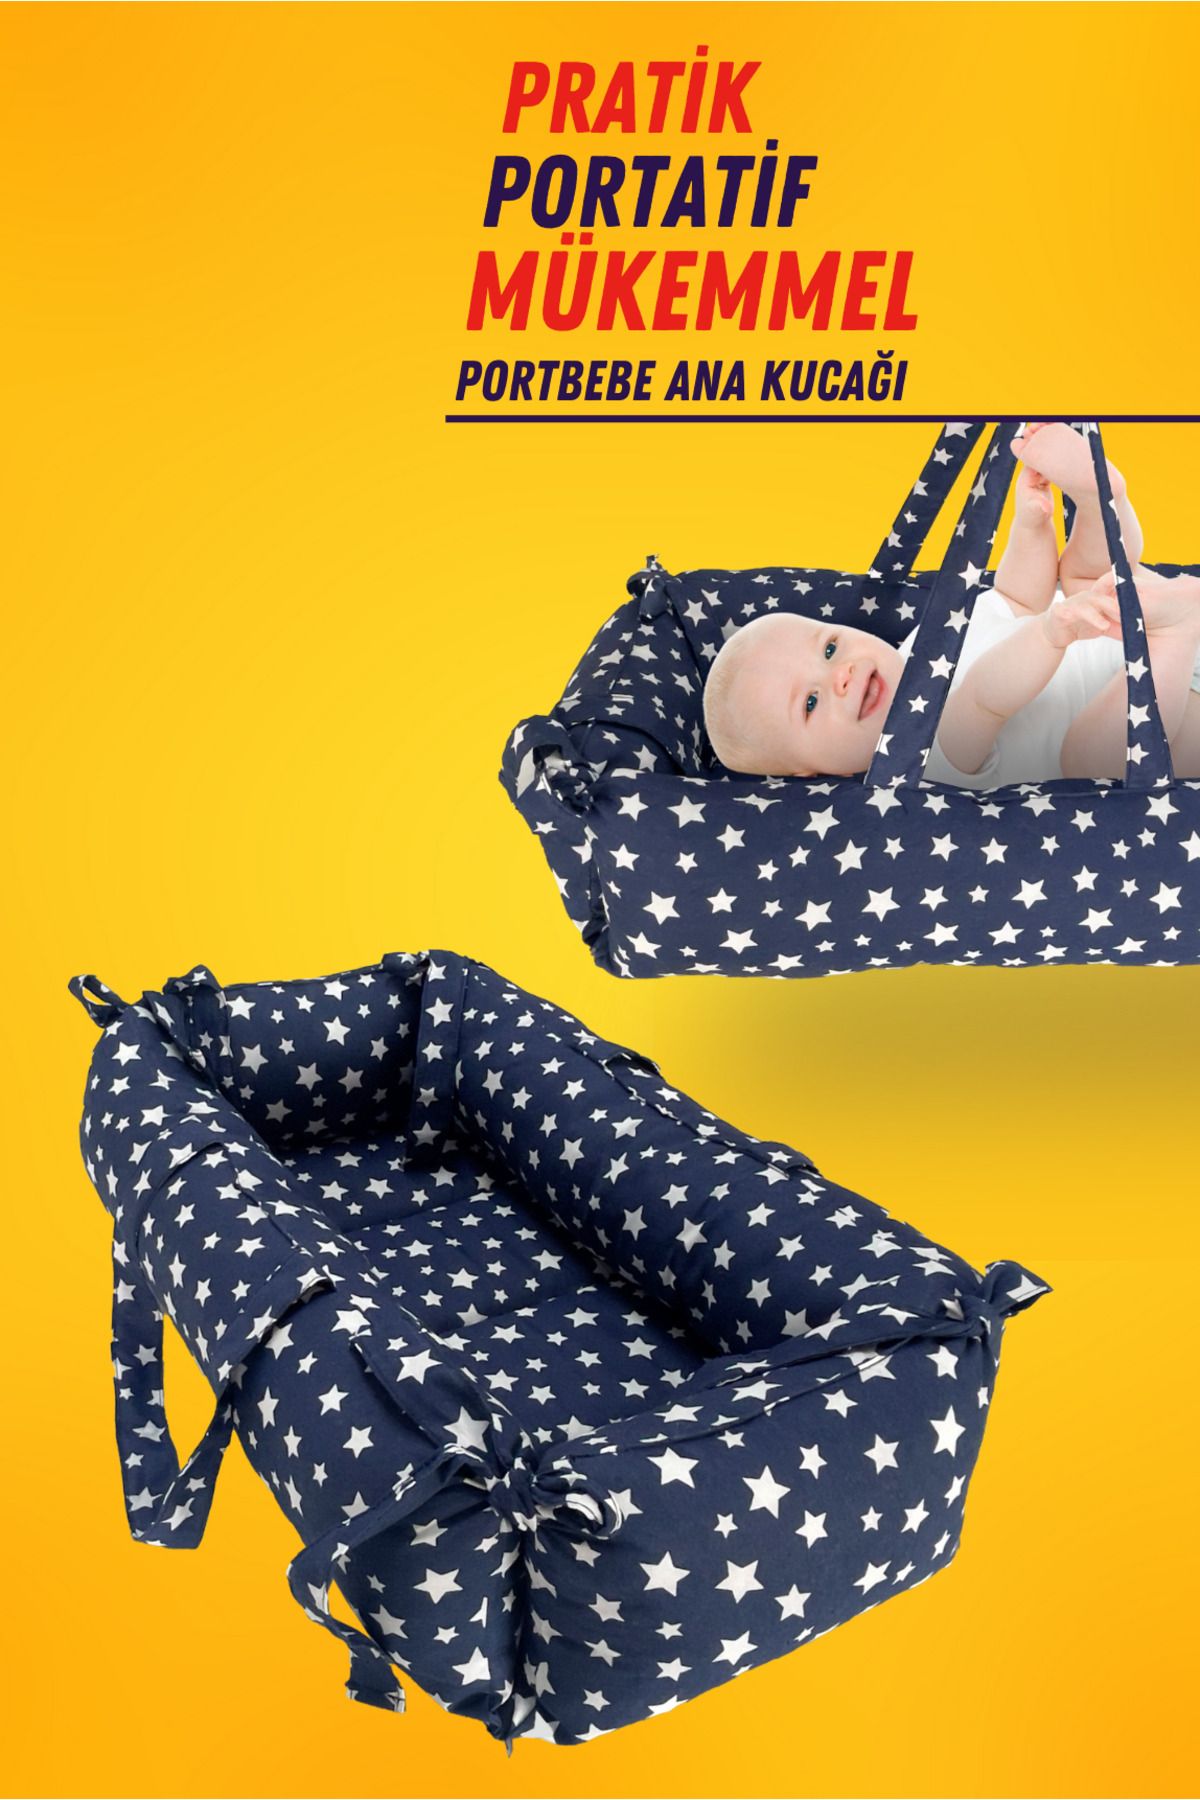 XPERMATE Portbebe Ana Kucağı, Puset Bebek Taşıma Çantası Kundağı 50x70 cm Yıldızlı Lacivert